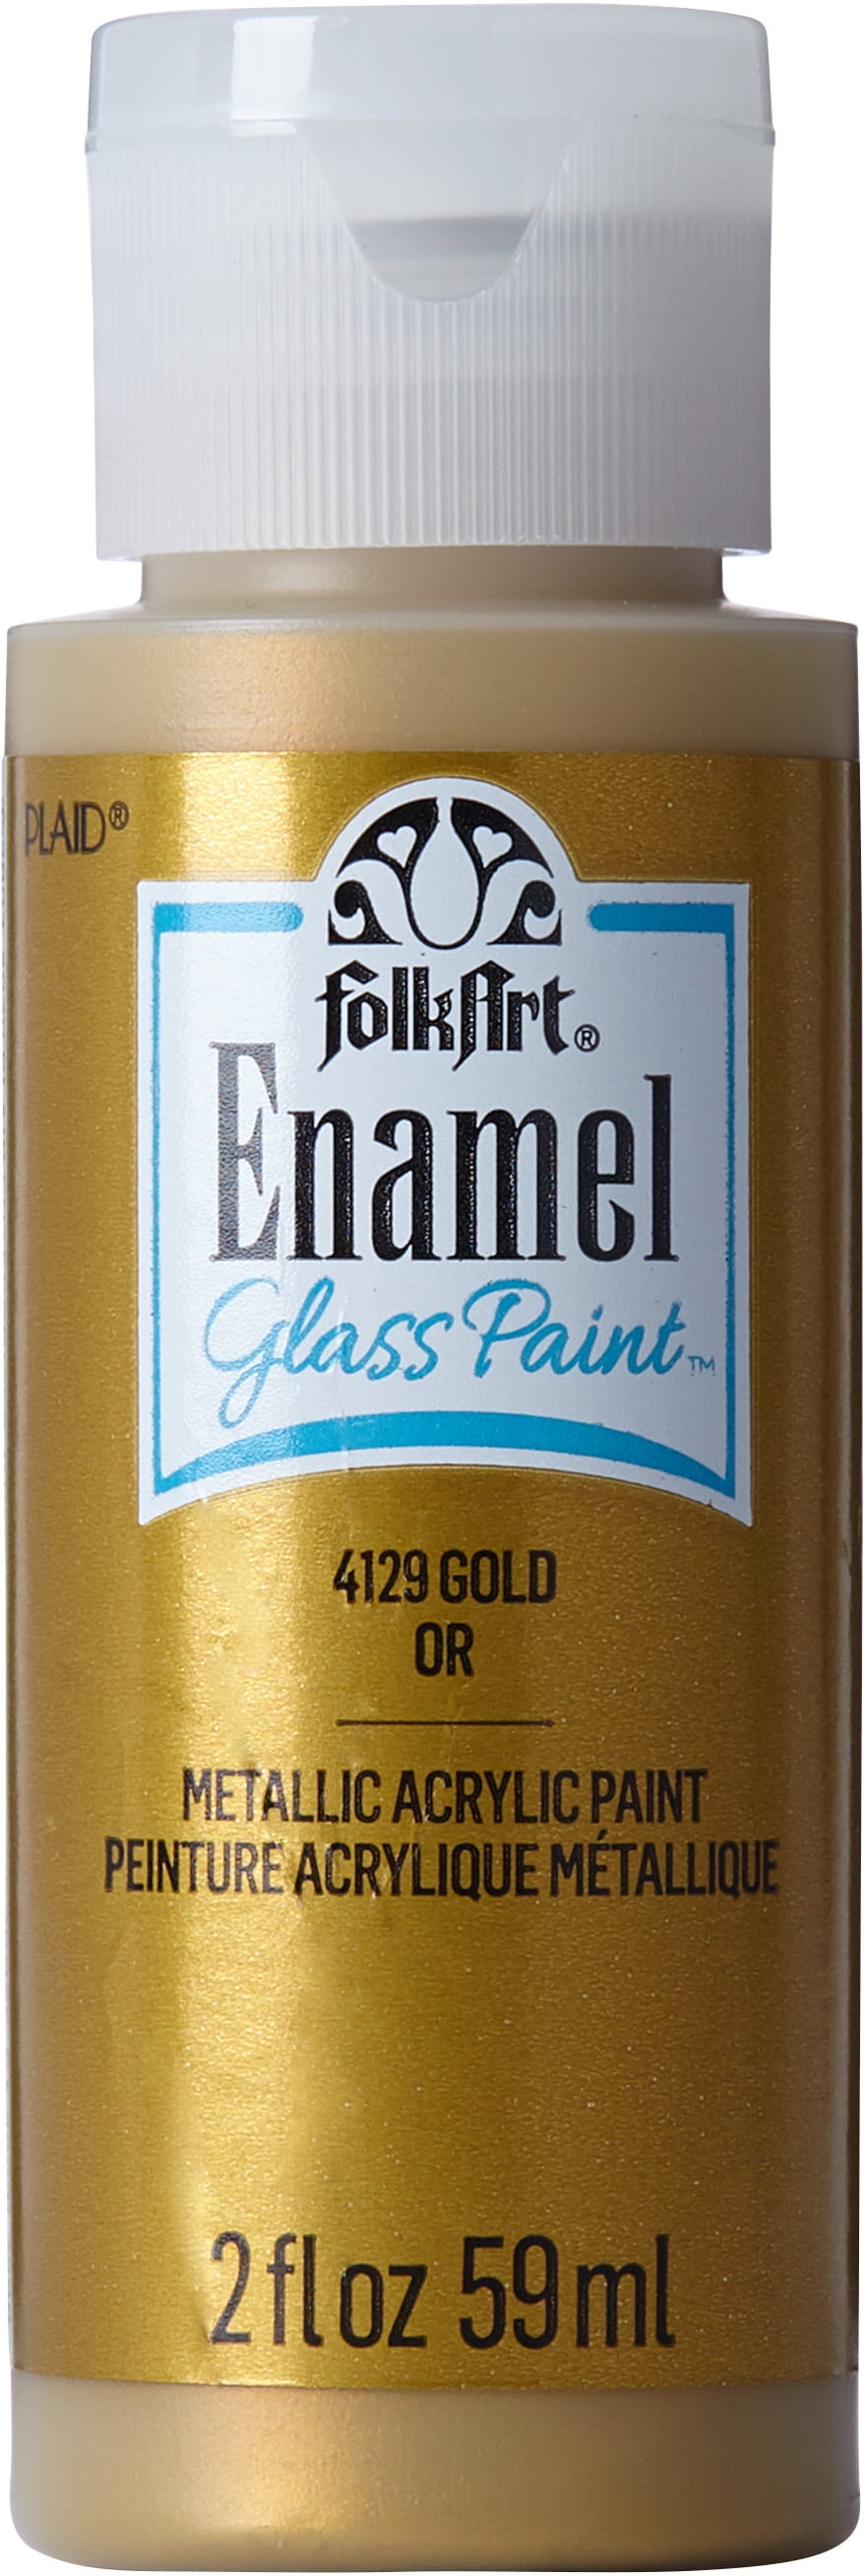 FolkArt Enamels 2 fl. oz Acrylic Paint